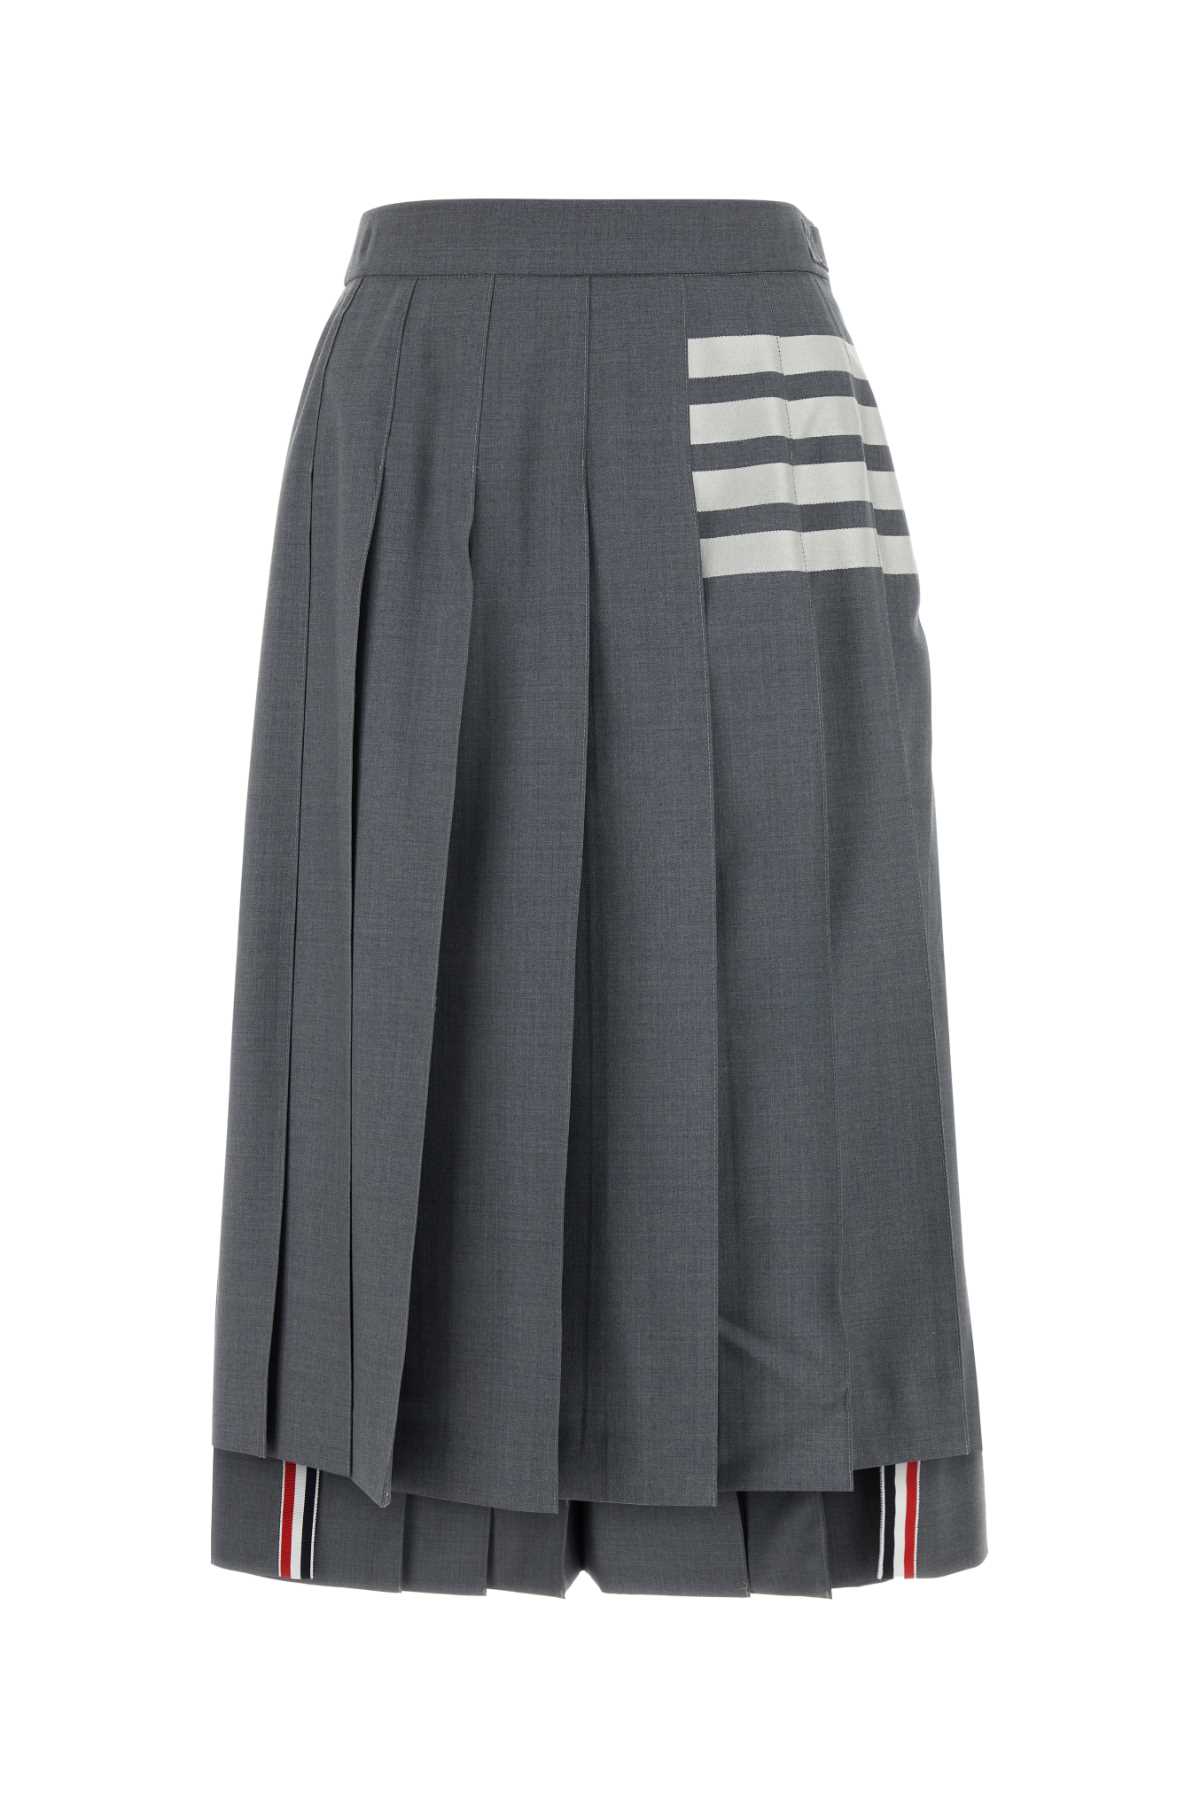 Thom Browne Grey Wool Skirt In 035